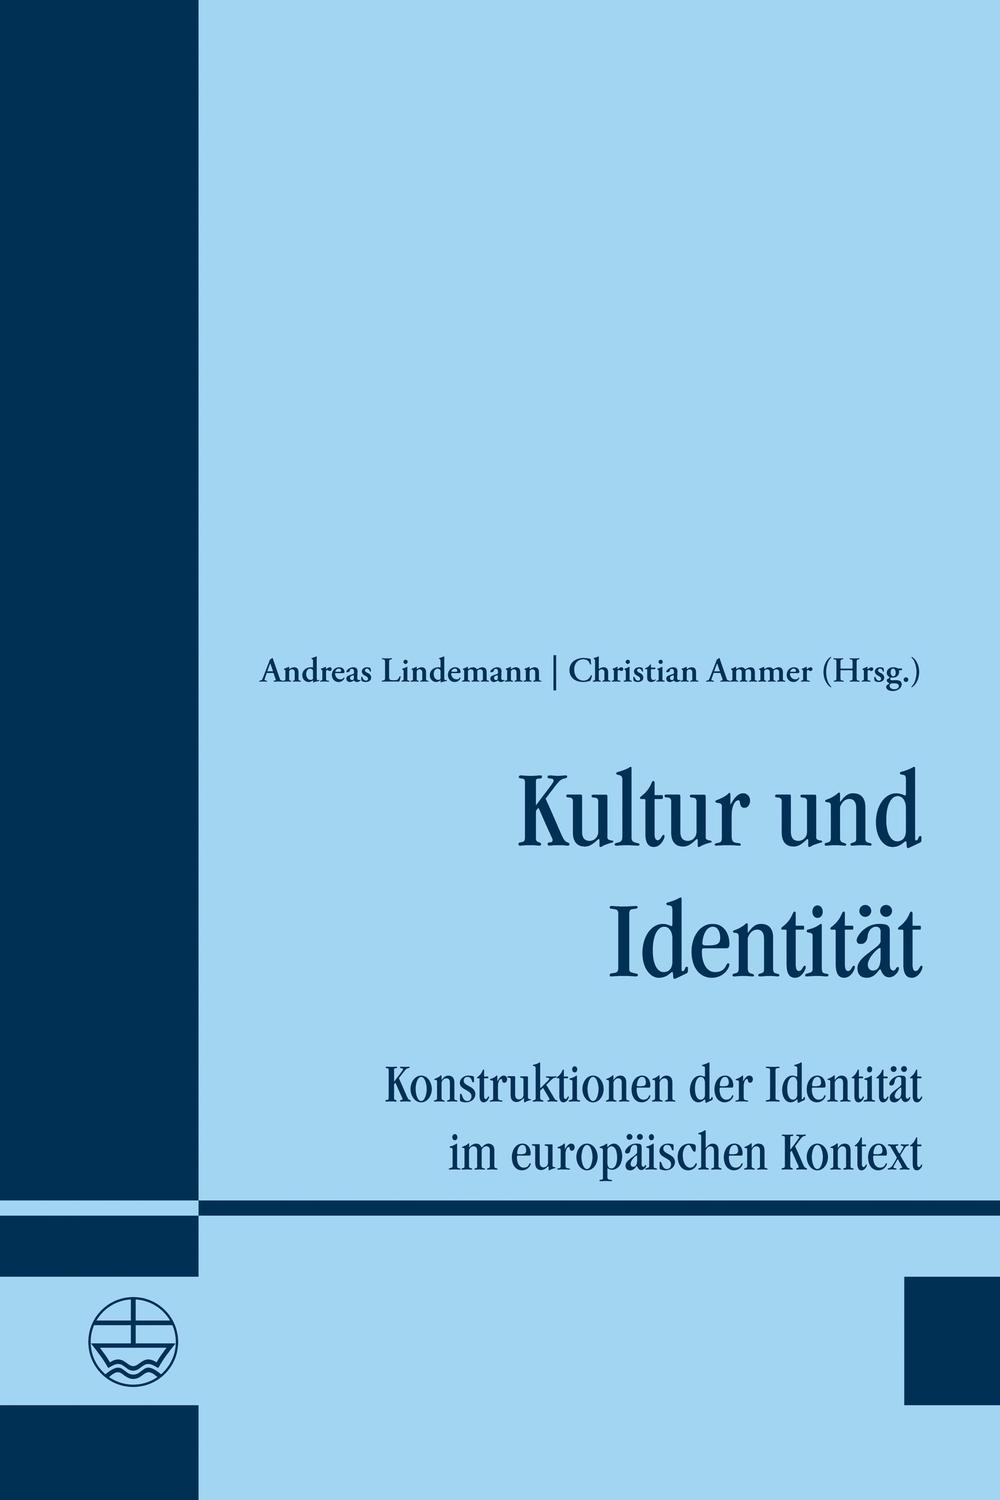 Kultur und Identität - Andreas Lindemann, Christian Ammer